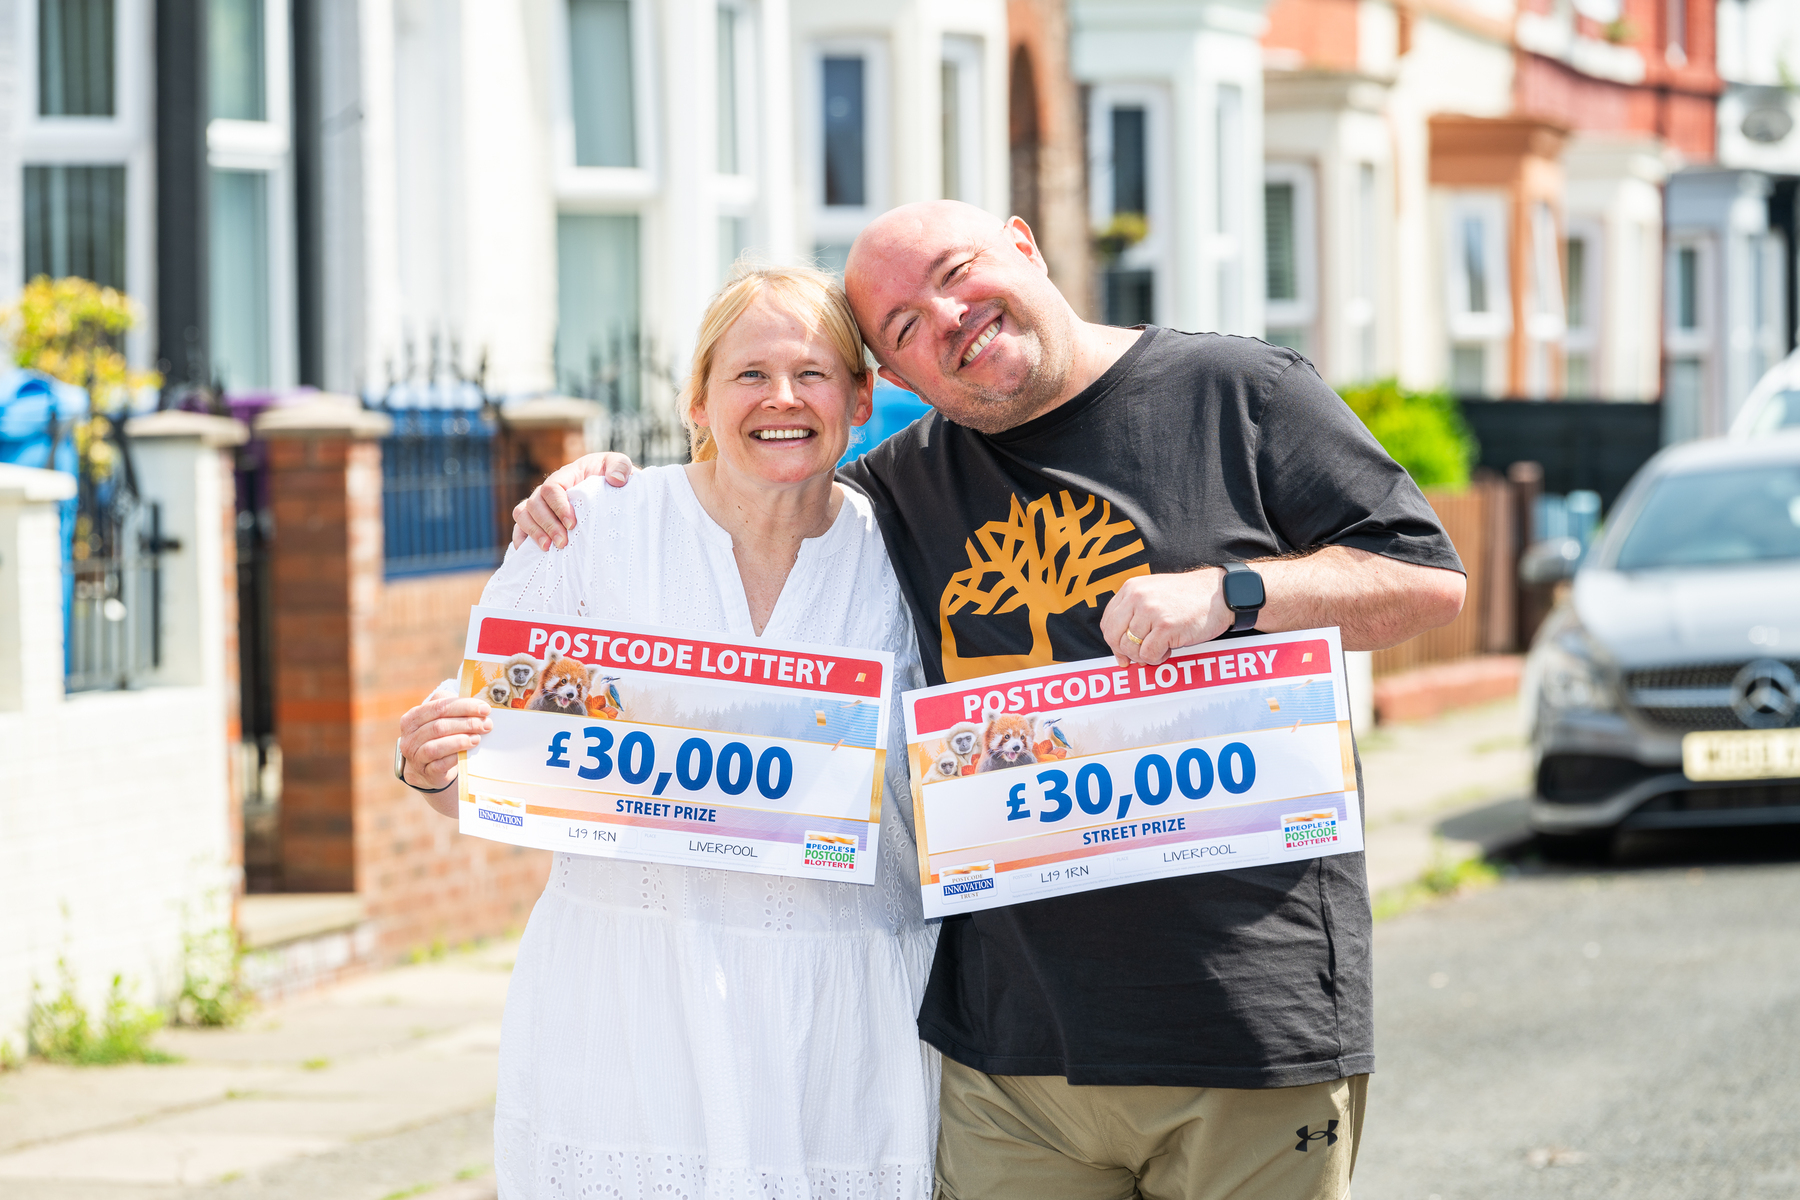 Winners Jo and Steve landed £30,000 each